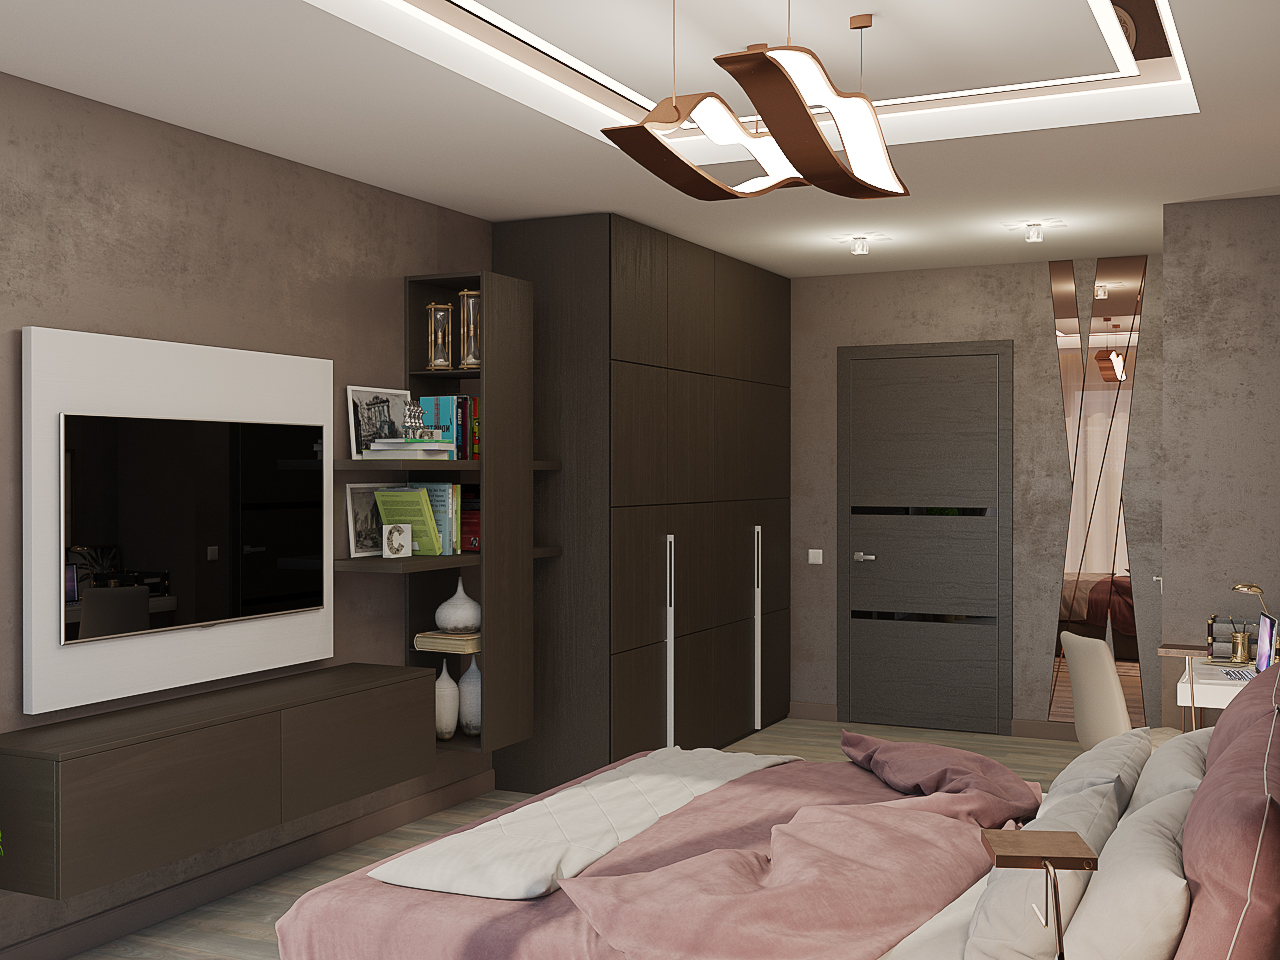 Chambre dans le style de l'hôtel dans 3d max vray 3.0 image